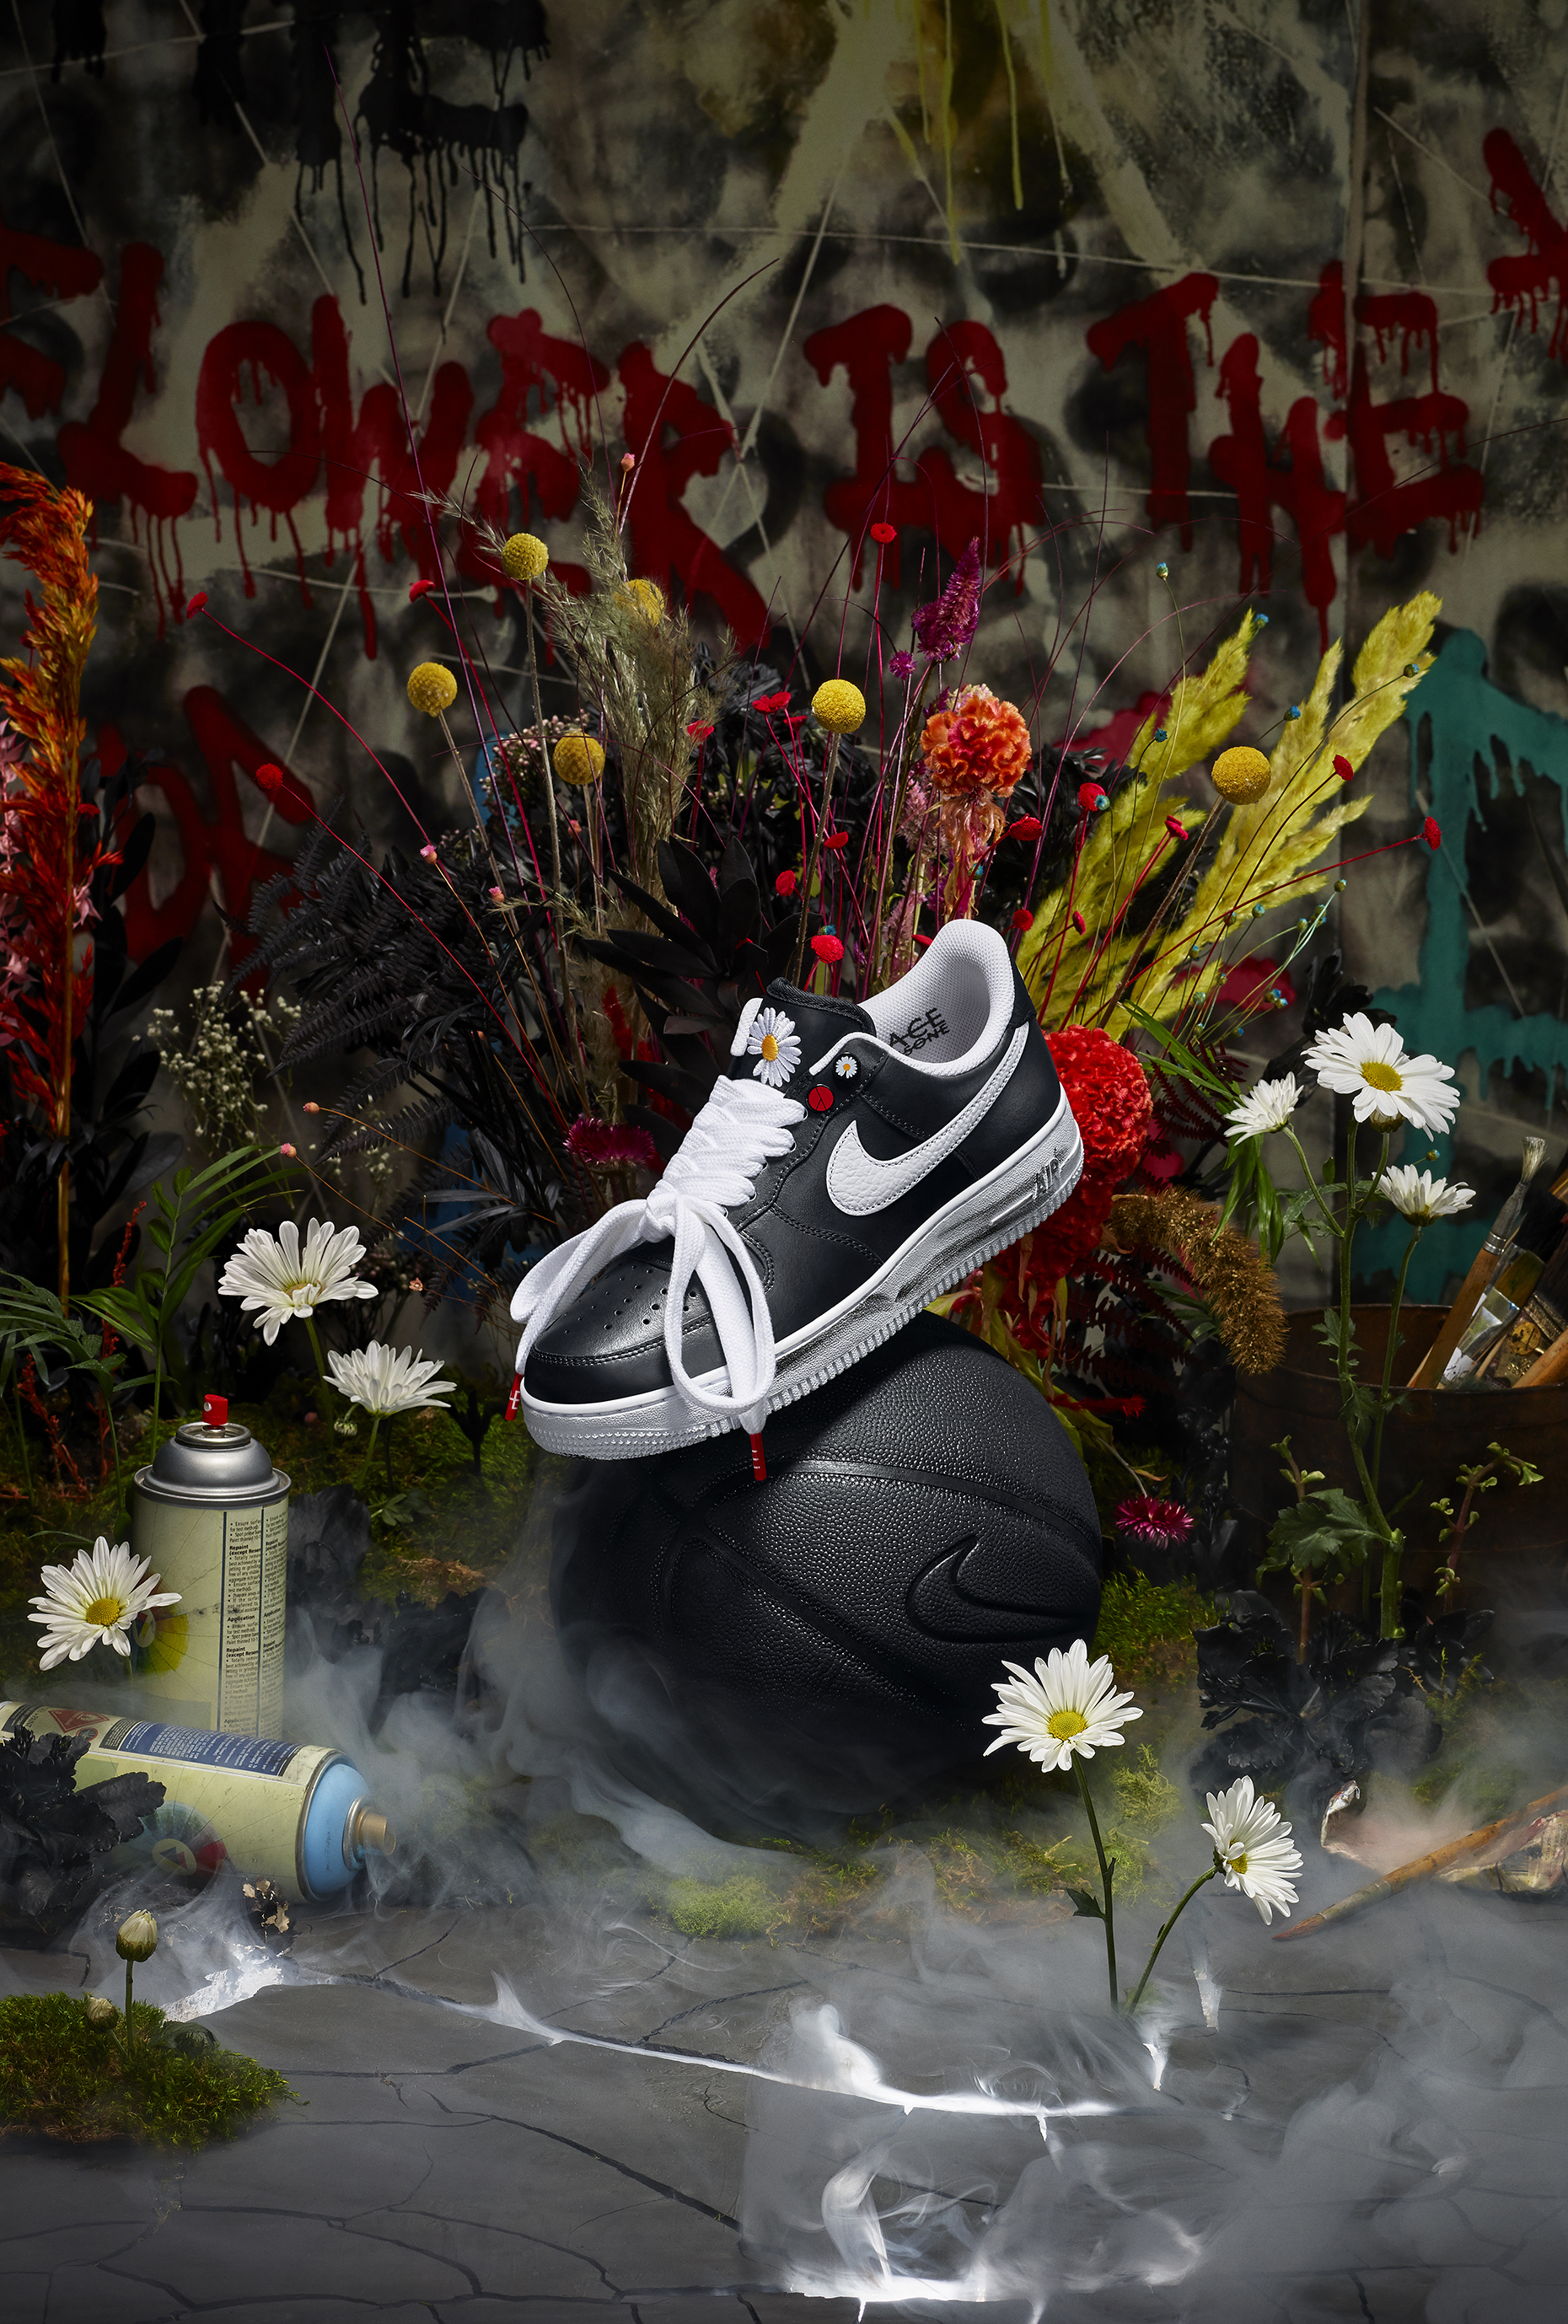 Nike x G Dragon - bộ sưu tập độc đáo này nổi bật với thiết kế khác biệt và phong cách đầy cá tính. Những đôi giày này không chỉ là sản phẩm thời trang mà còn là sự kết hợp tuyệt vời giữa Nike và G Dragon - một trong những nhân vật đình đám nhất của làng giải trí Hàn Quốc.